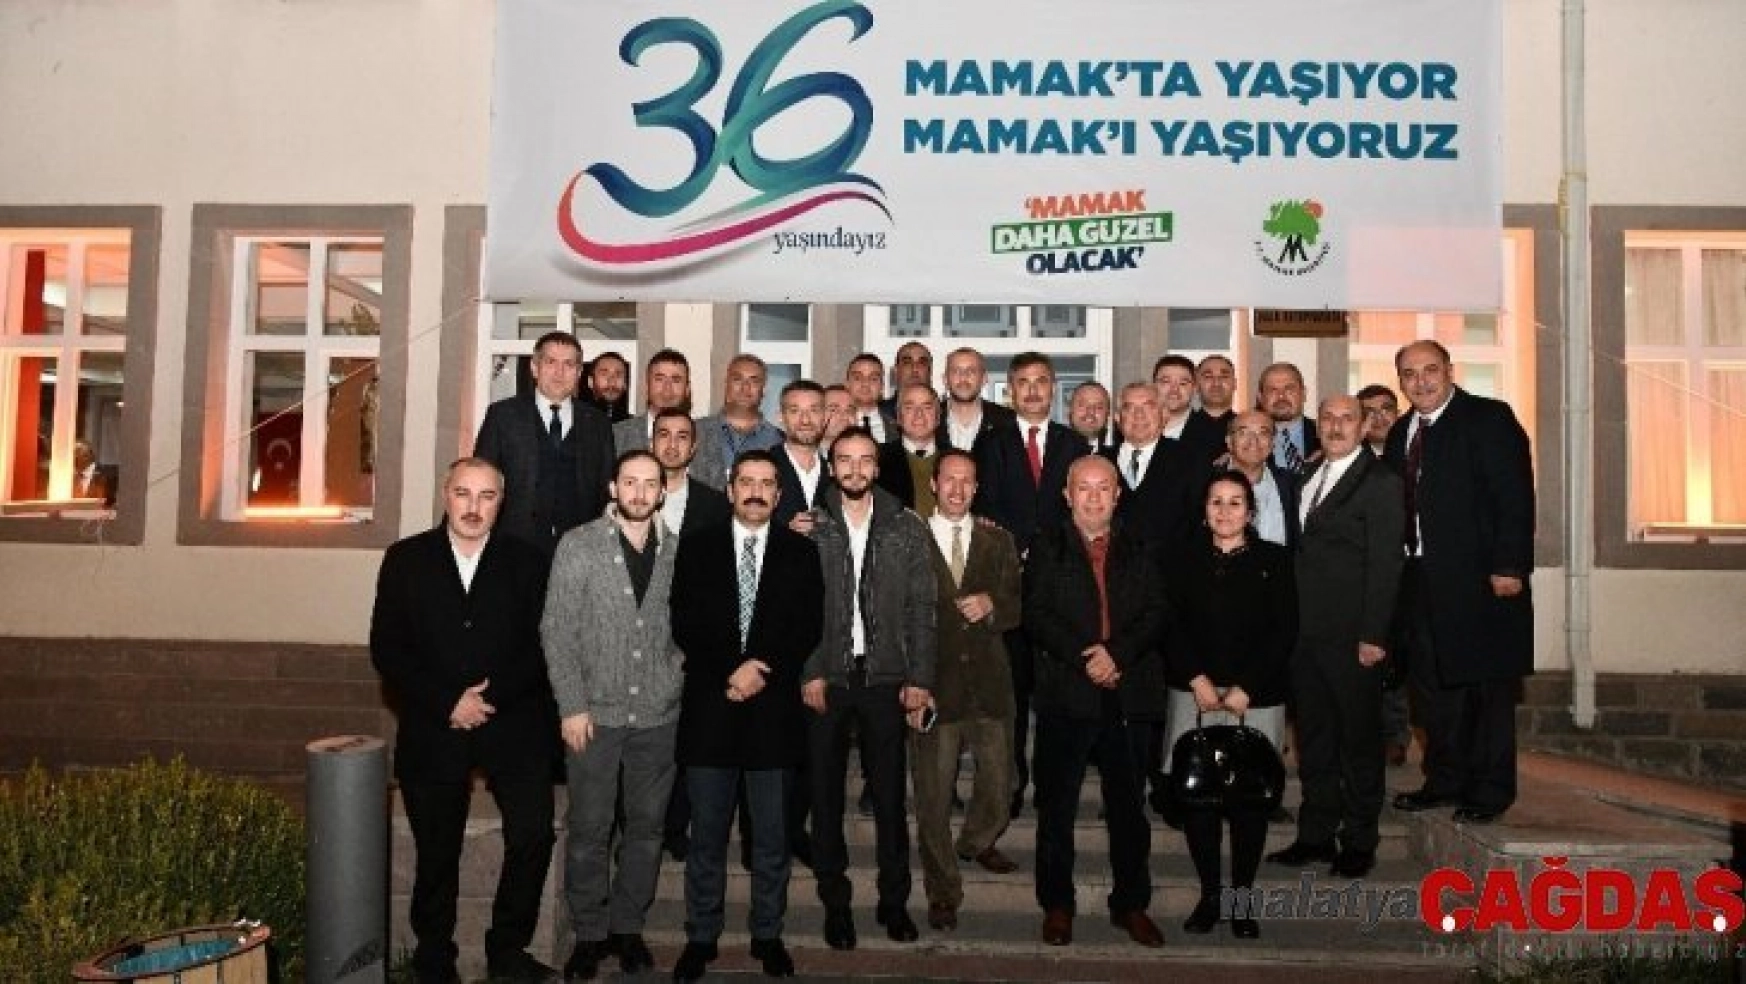 Mamak Belediyesi'nin 36. kuruluş yıl dönümüne coşkulu kutlama